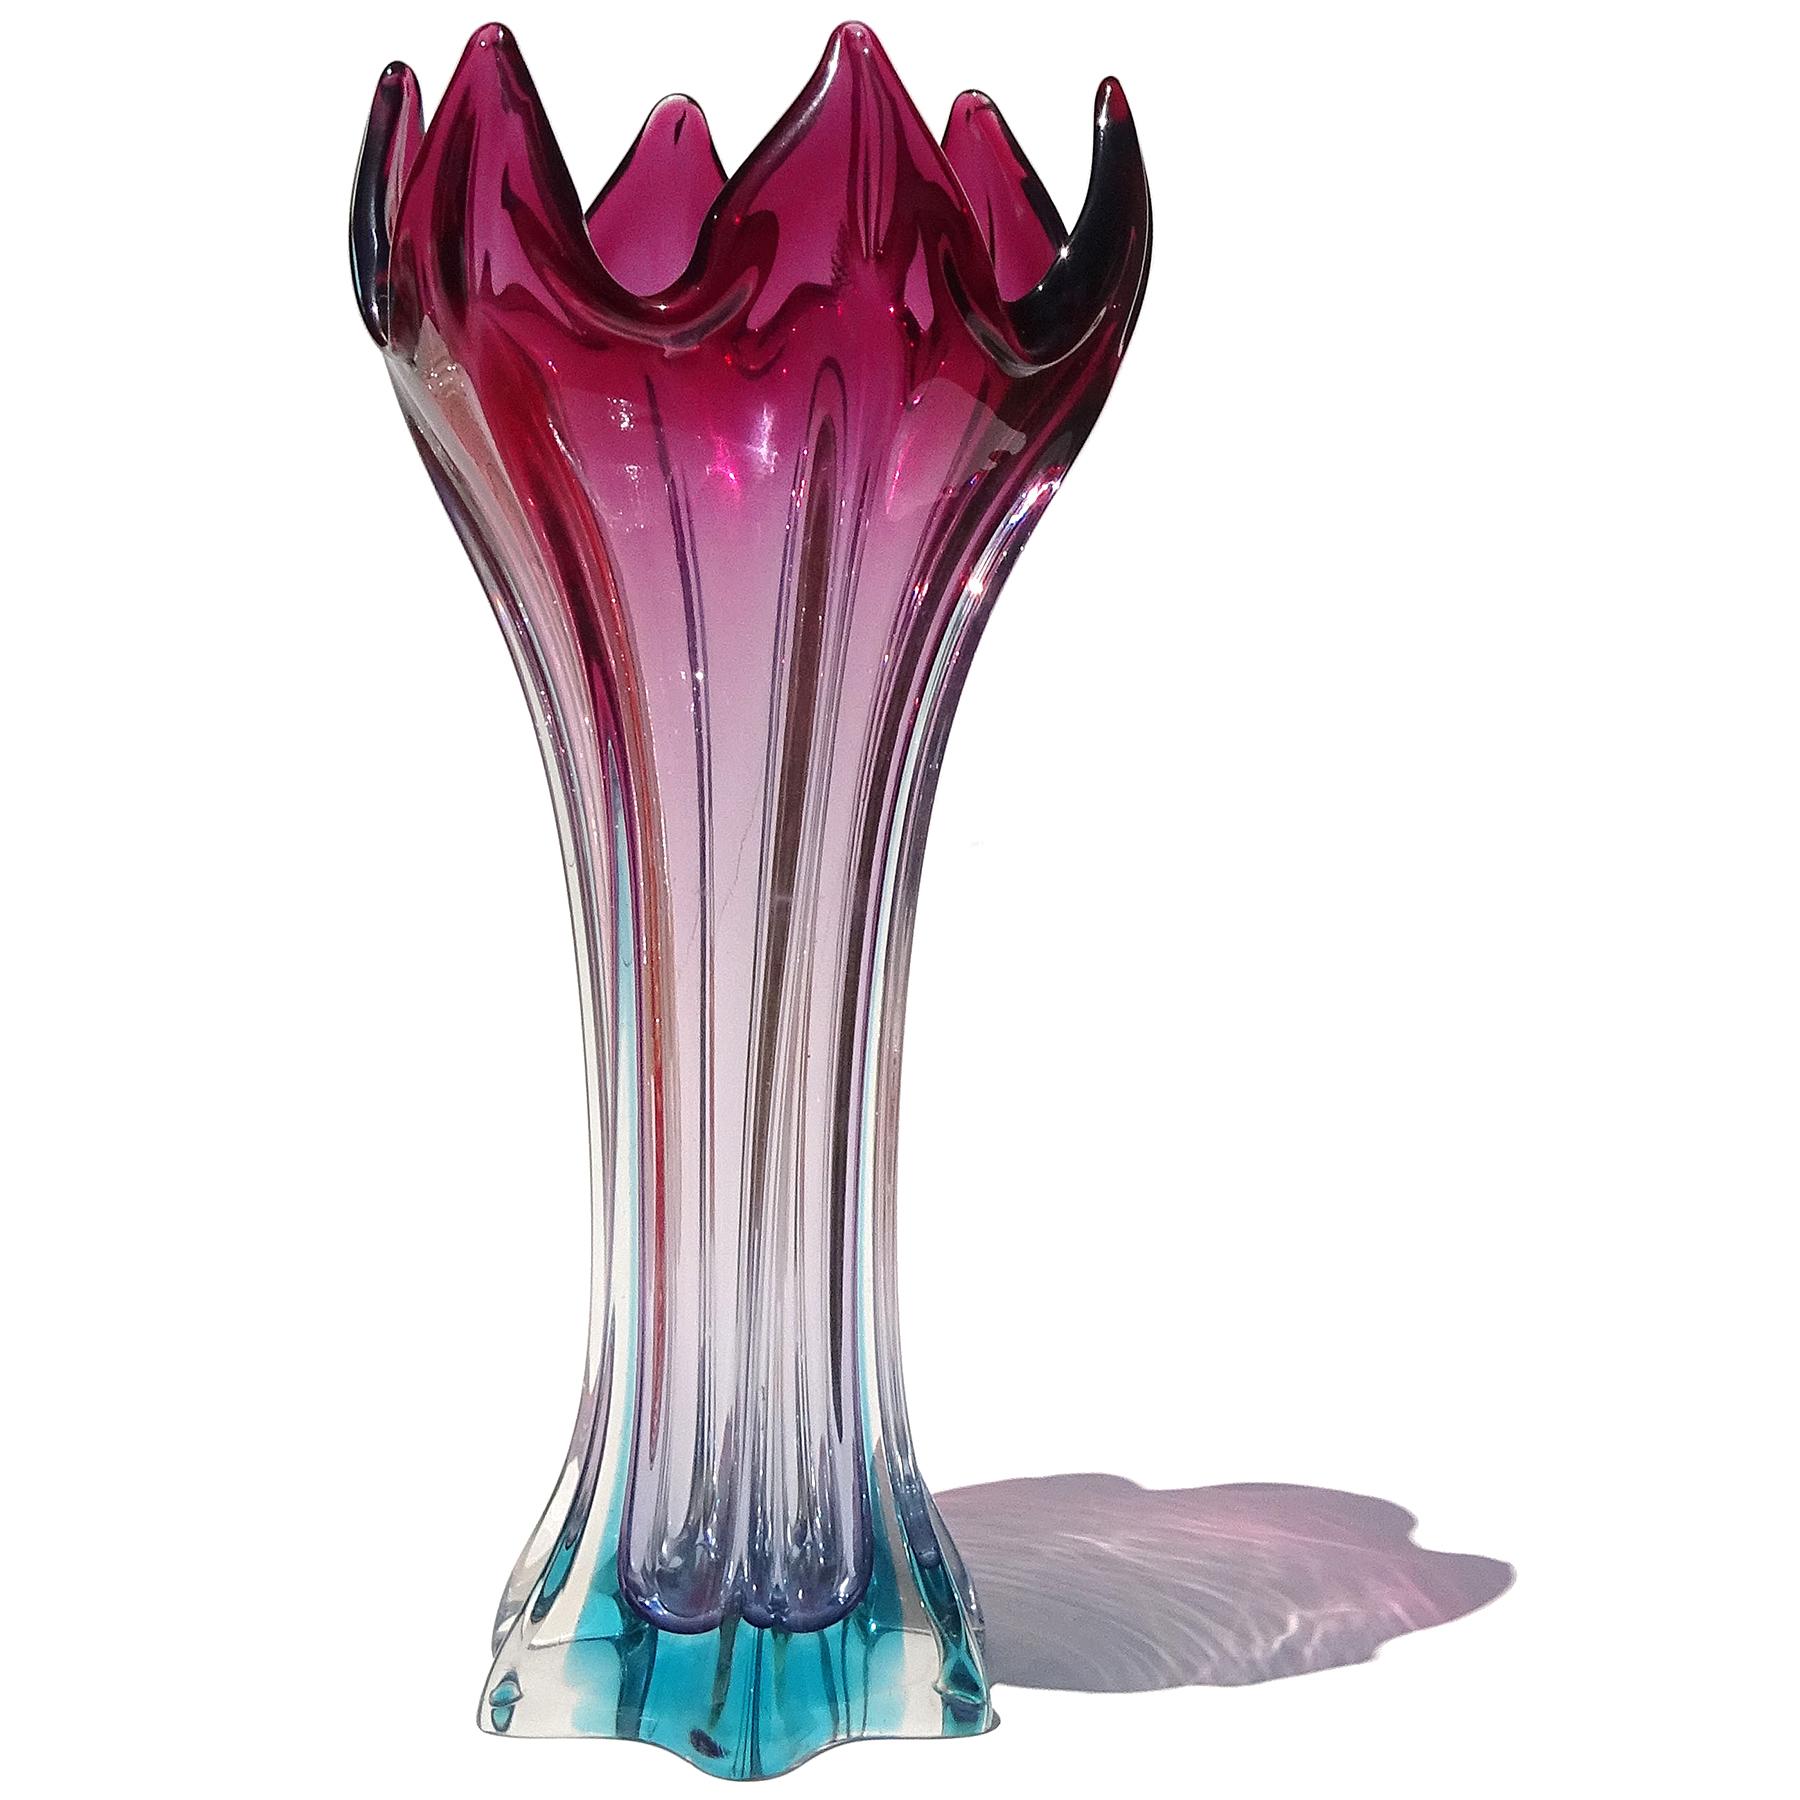 Schöne Vintage Murano mundgeblasen Sommerso lila bis hellblau italienische Kunst Glas abstrakte Form Blume Vase. Das Stück hat eine einzigartige Form mit der offenen Oberseite der Vase, die wie eine offene Blume aussieht (besonders von oben nach